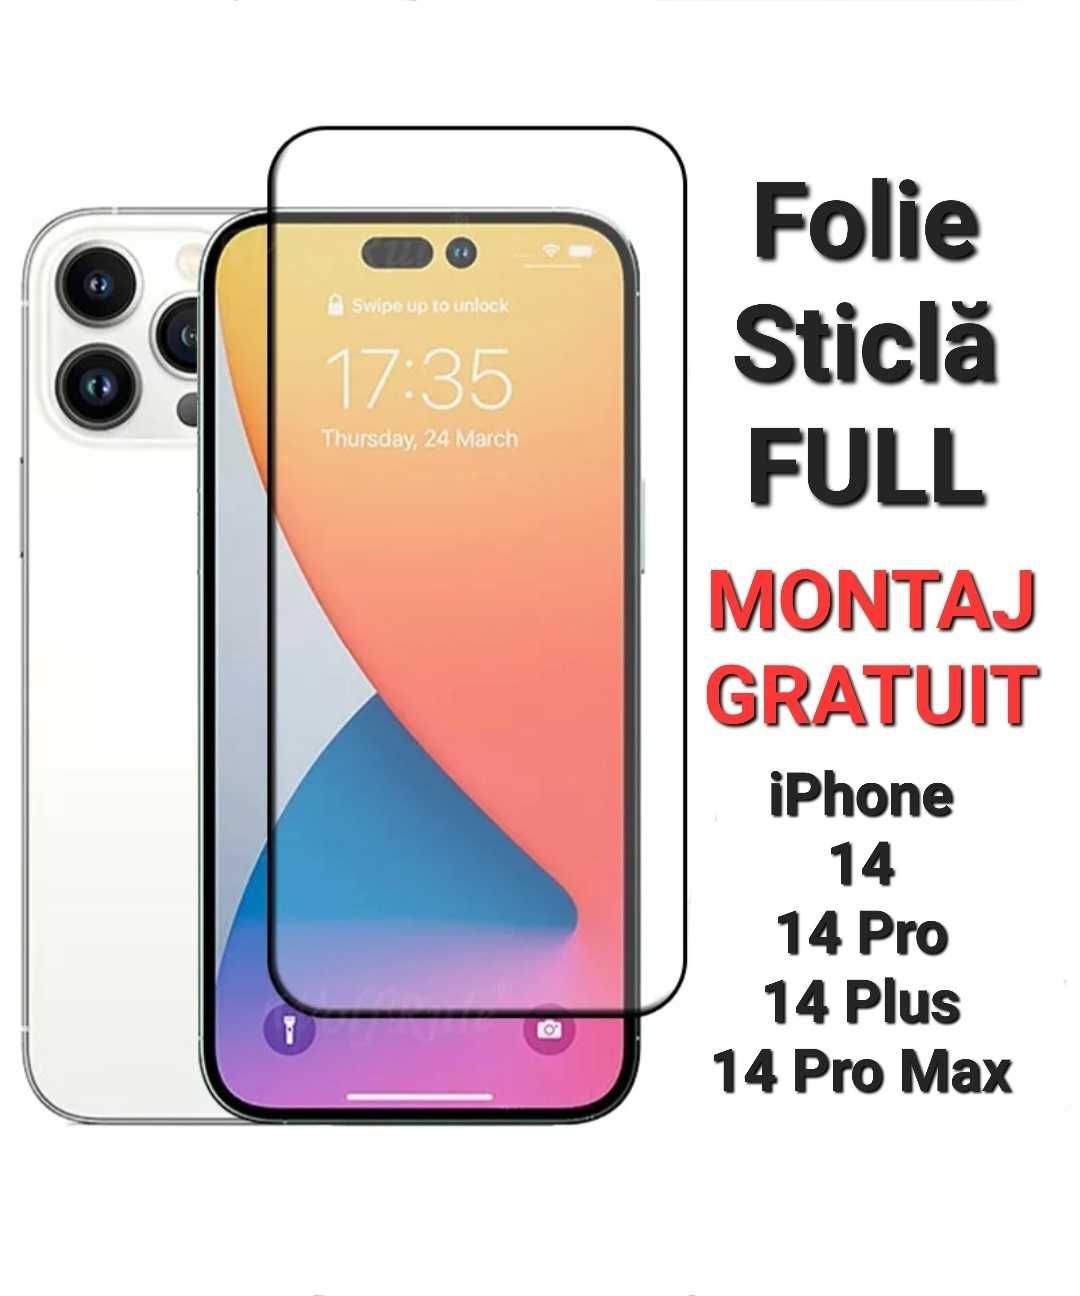 Folie Sticla Full iPhone 7 8 X XR XS Max 11 12 13 14 Pro Pro Max Plus